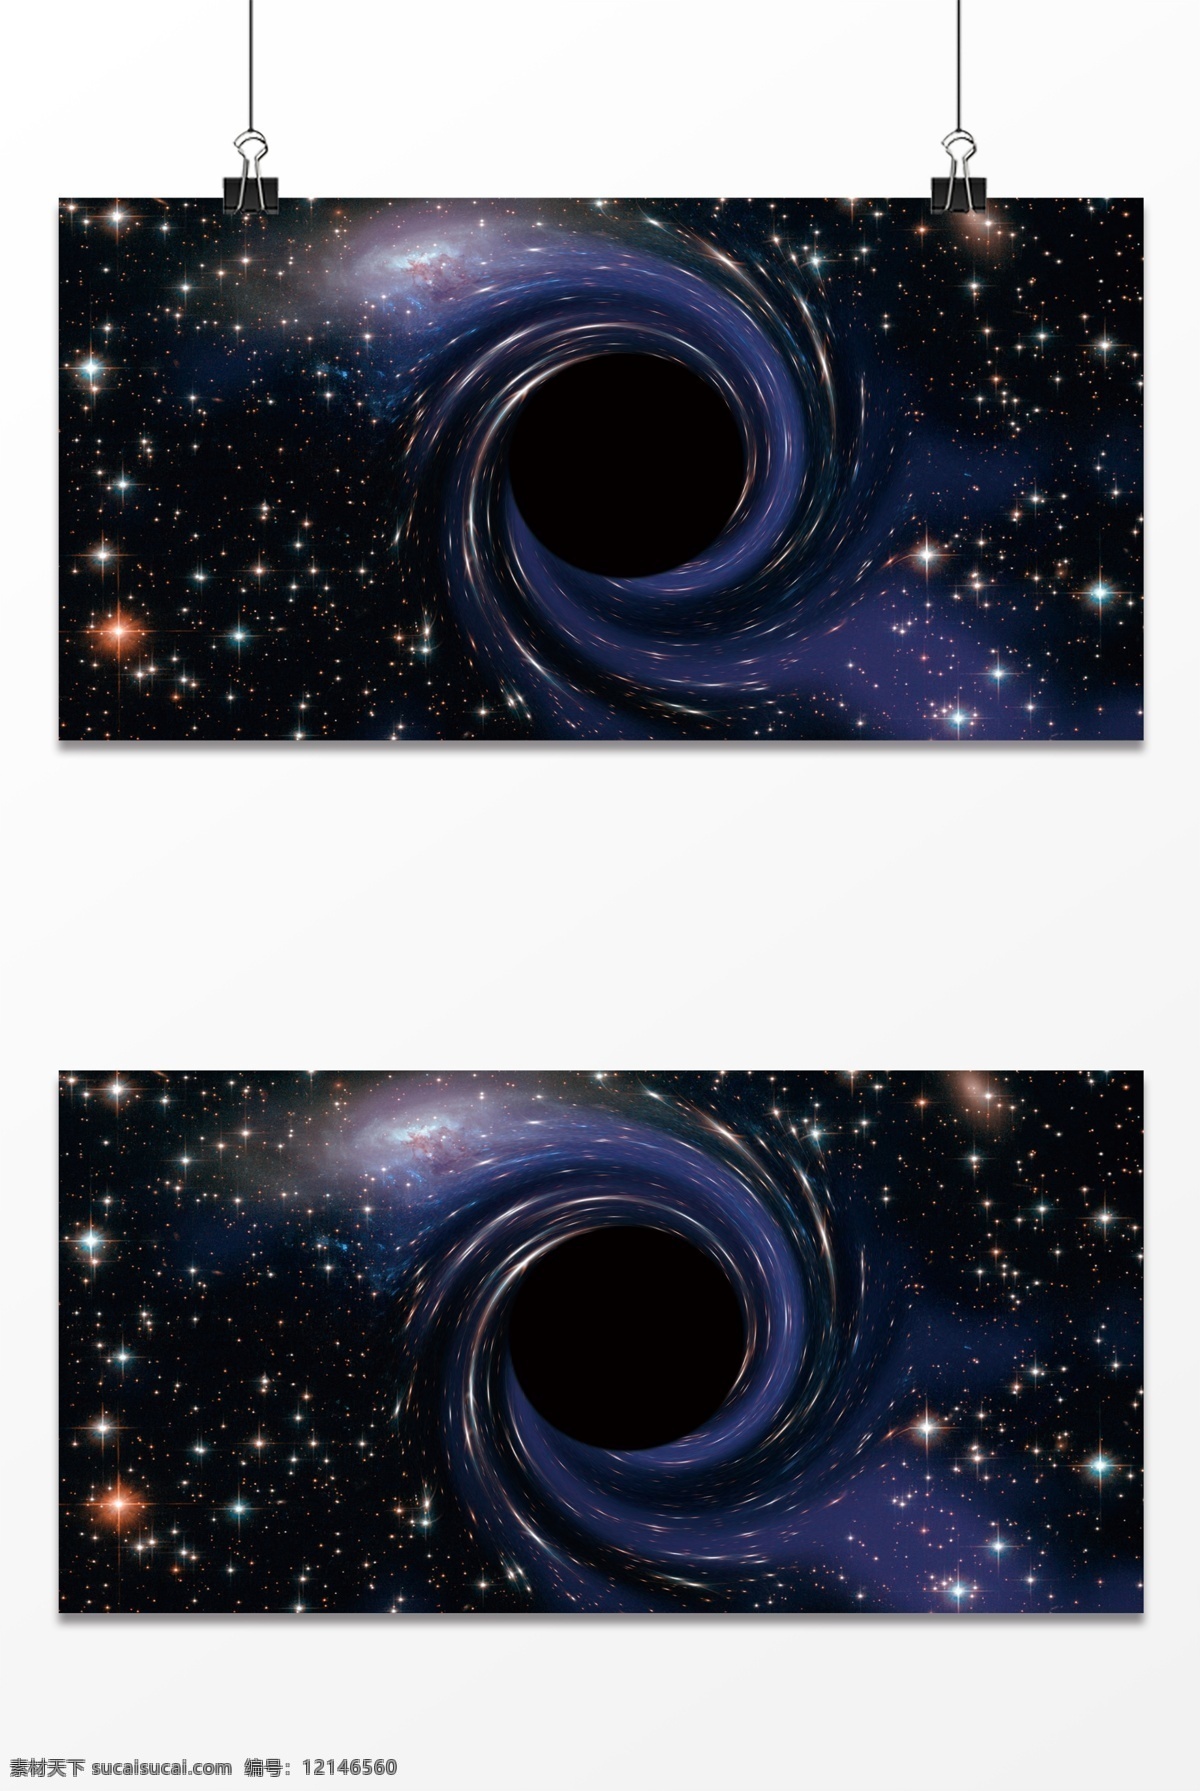 宇宙 星空 黑洞 背景 天空 炫彩 科技 外太空 海报背景 装饰 图案 渐变 数码科技背景 烟雾 分层 背景素材